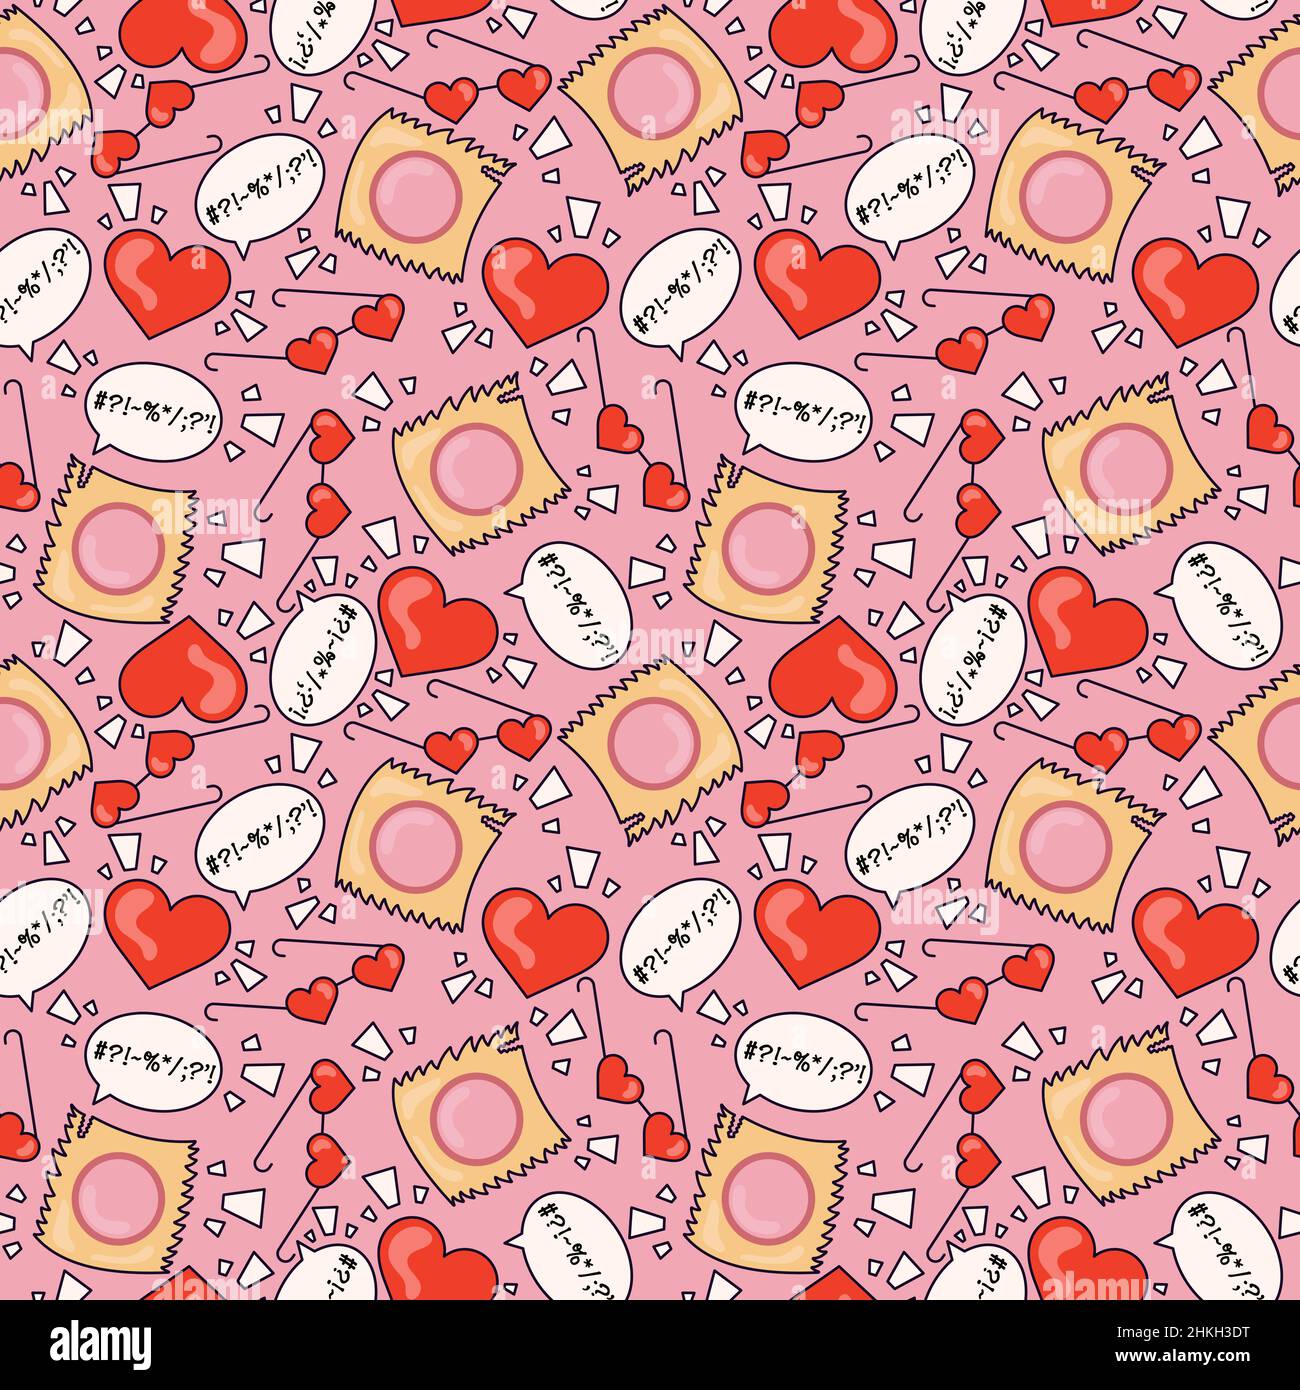 Cuori rossi, vetri cardiaci, messaggi e involucri su sfondo rosa in stile cartone animato del 70s . Motivo senza giunture astratto. Illustrazione. Vettore Illustrazione Vettoriale